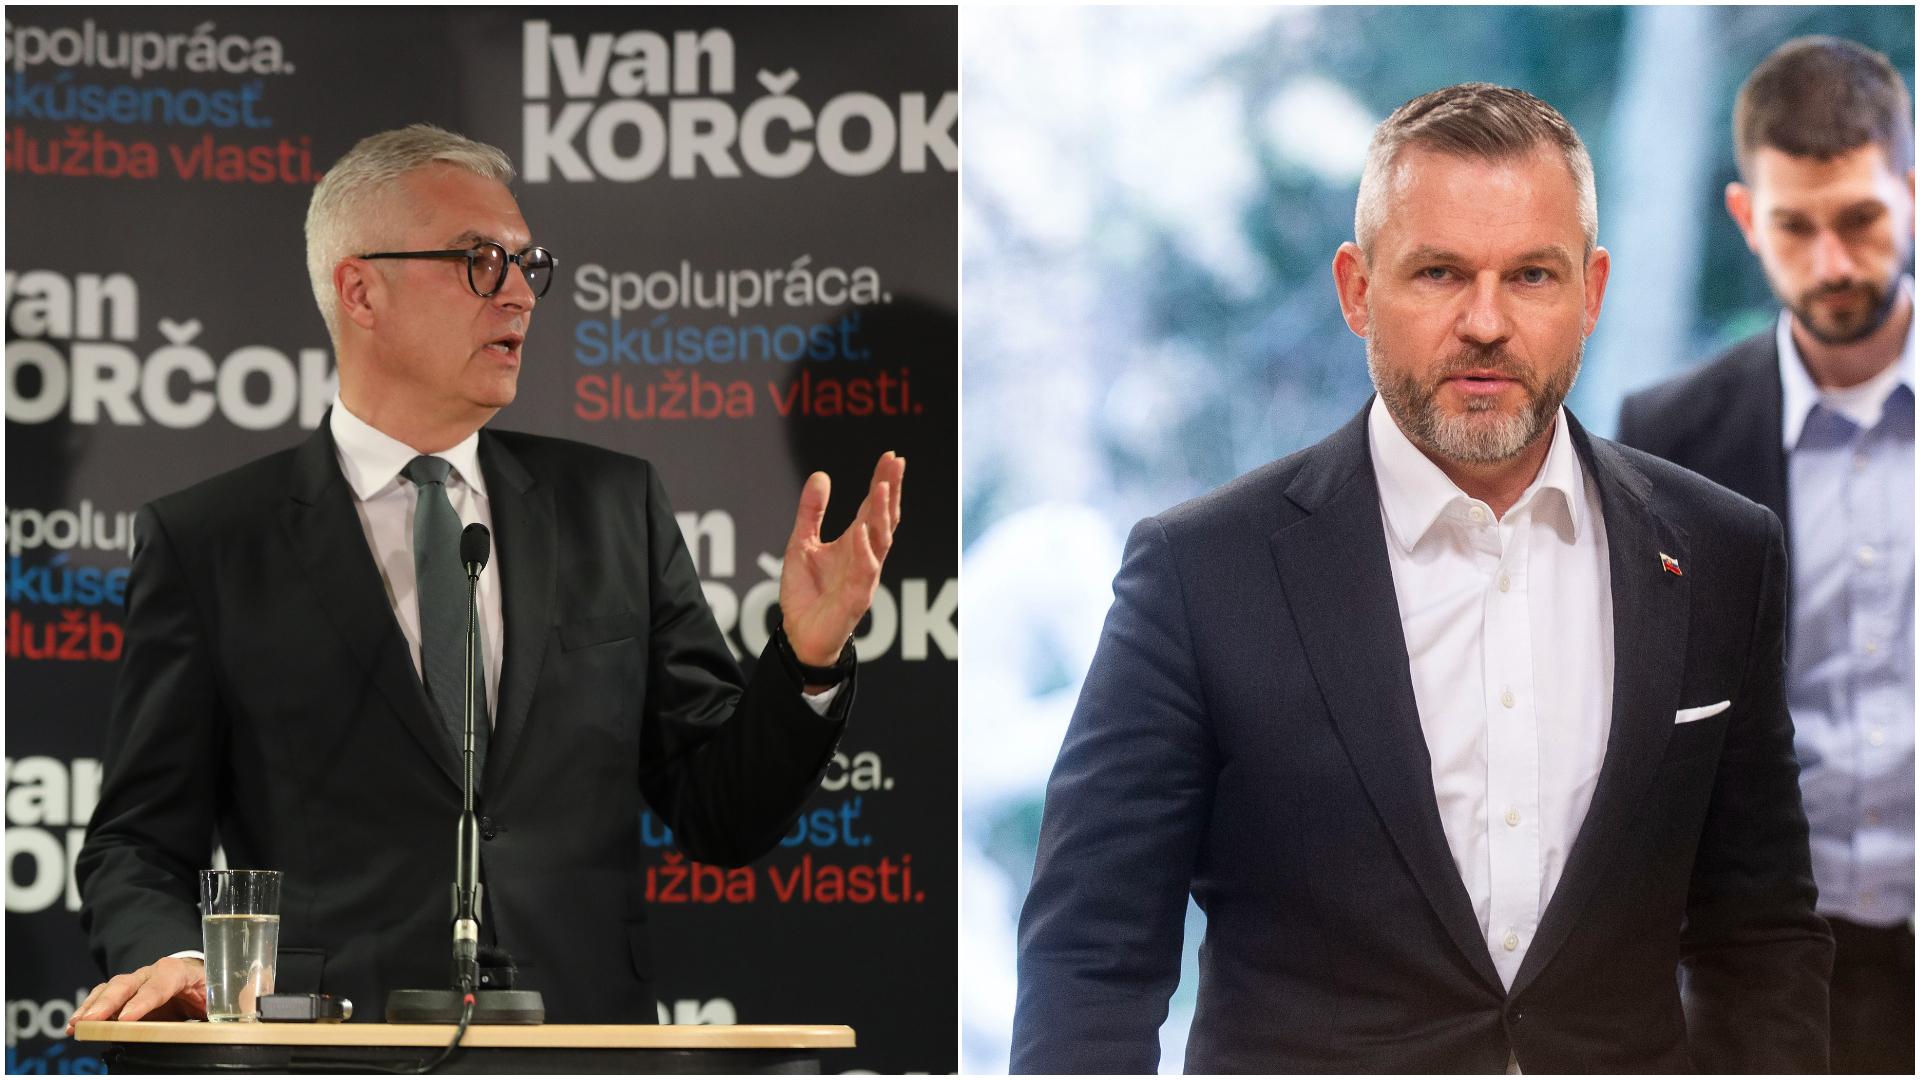 Prezidentské voľby: Korčok vs. Pellegrini, kandidáti diskutovali v druhom dueli